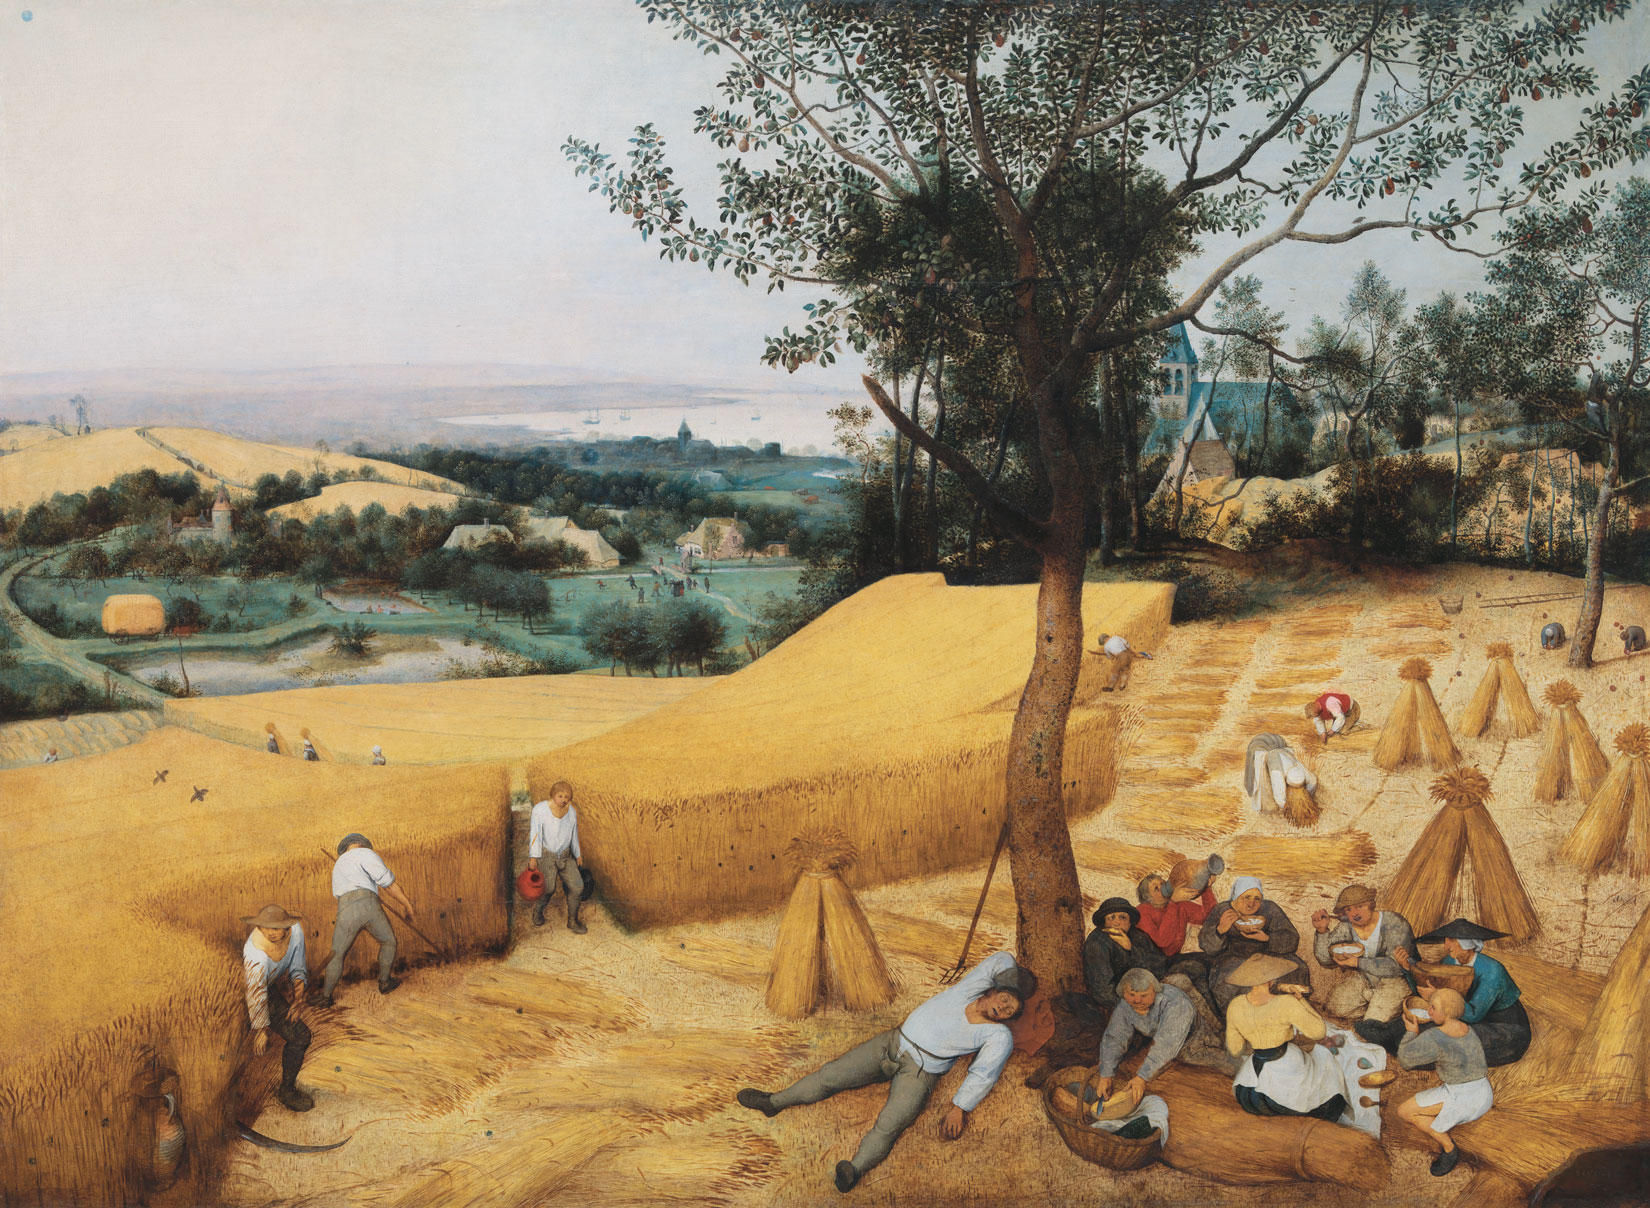 Pieter Bruegel the Elder, The Harvesters, 1565